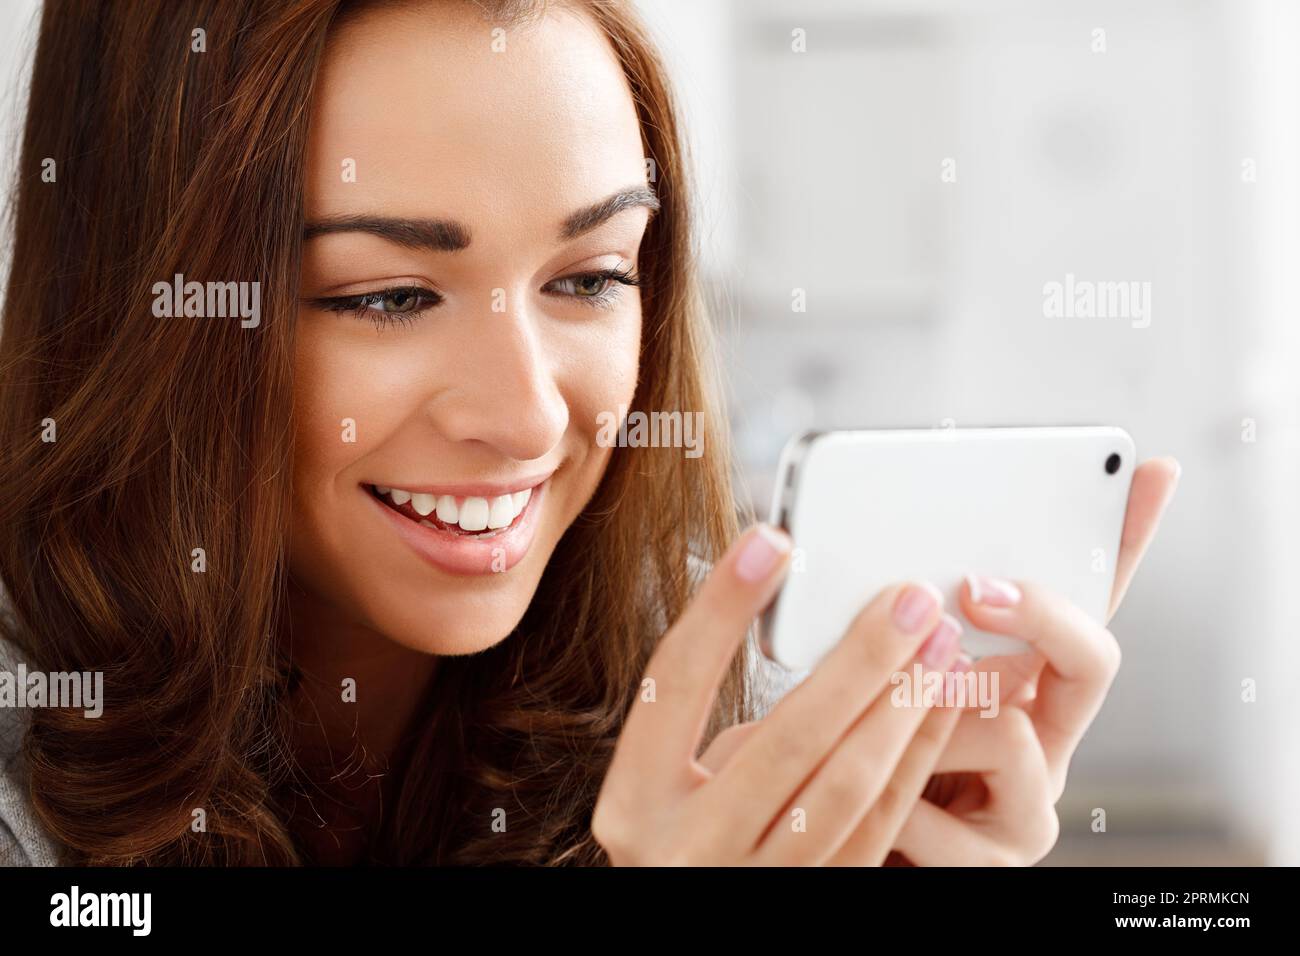 Glückliche Frau, die sich Videos mit einem Telefon ansieht, mit einer Internet-App zum Streamen oder Herunterladen. Junge Dame lächelt, während sie ein lustiges Meme liest oder eine Webserie oder einen Film mit einem Smartphone zu Hause genießt Stockfoto